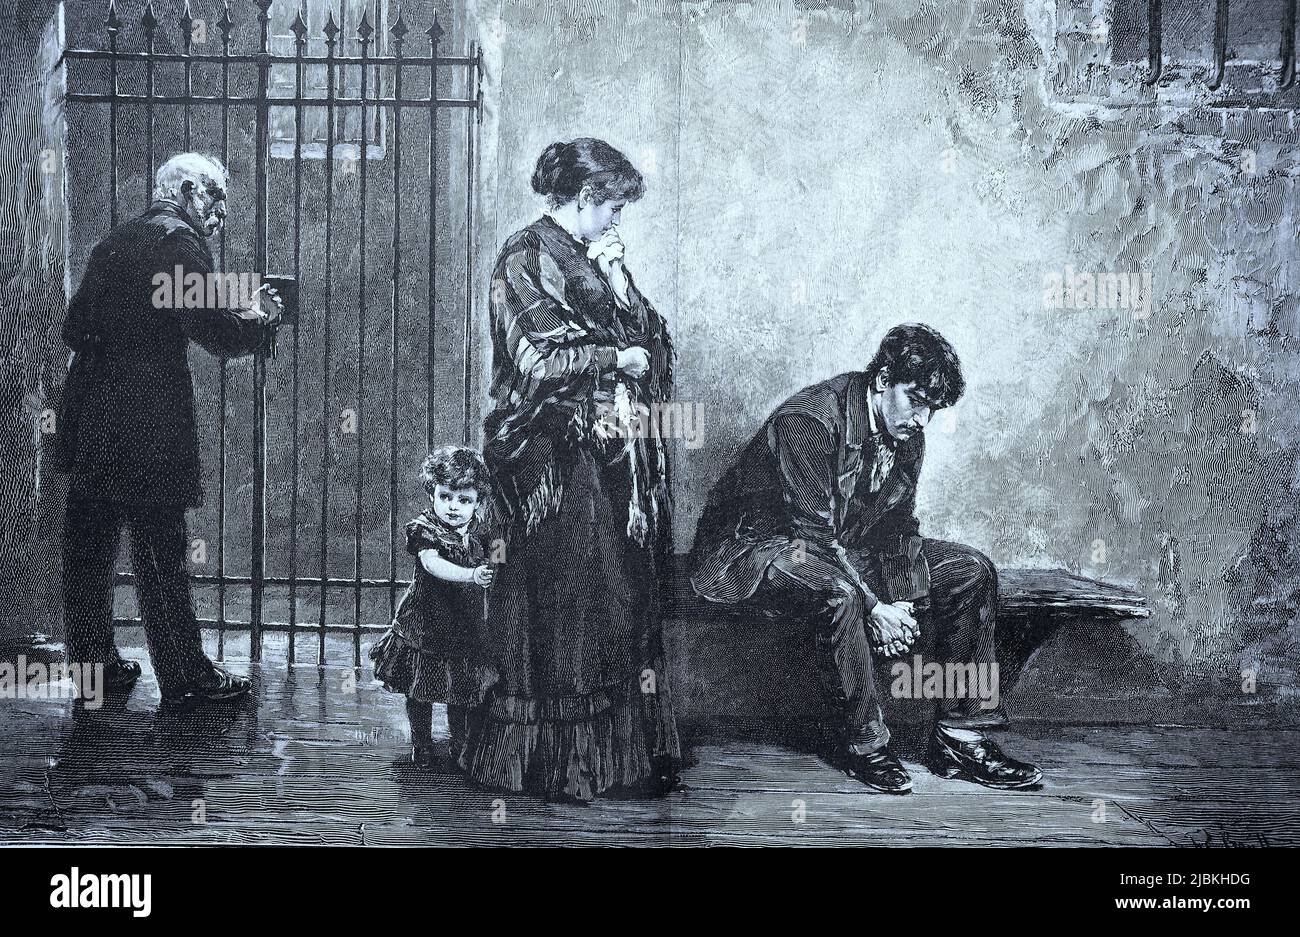 Beim Verurteilten im Gefängnis, Frau und Kind besuchen den Häftling, ein Wärter verschließt das Gitter, 1880, Deutschland, digital restaurierte Reproduktion einer Originalvorlage aus dem 19. Jahrhundert, genaues Originaldatum nicht bekannt Banque D'Images